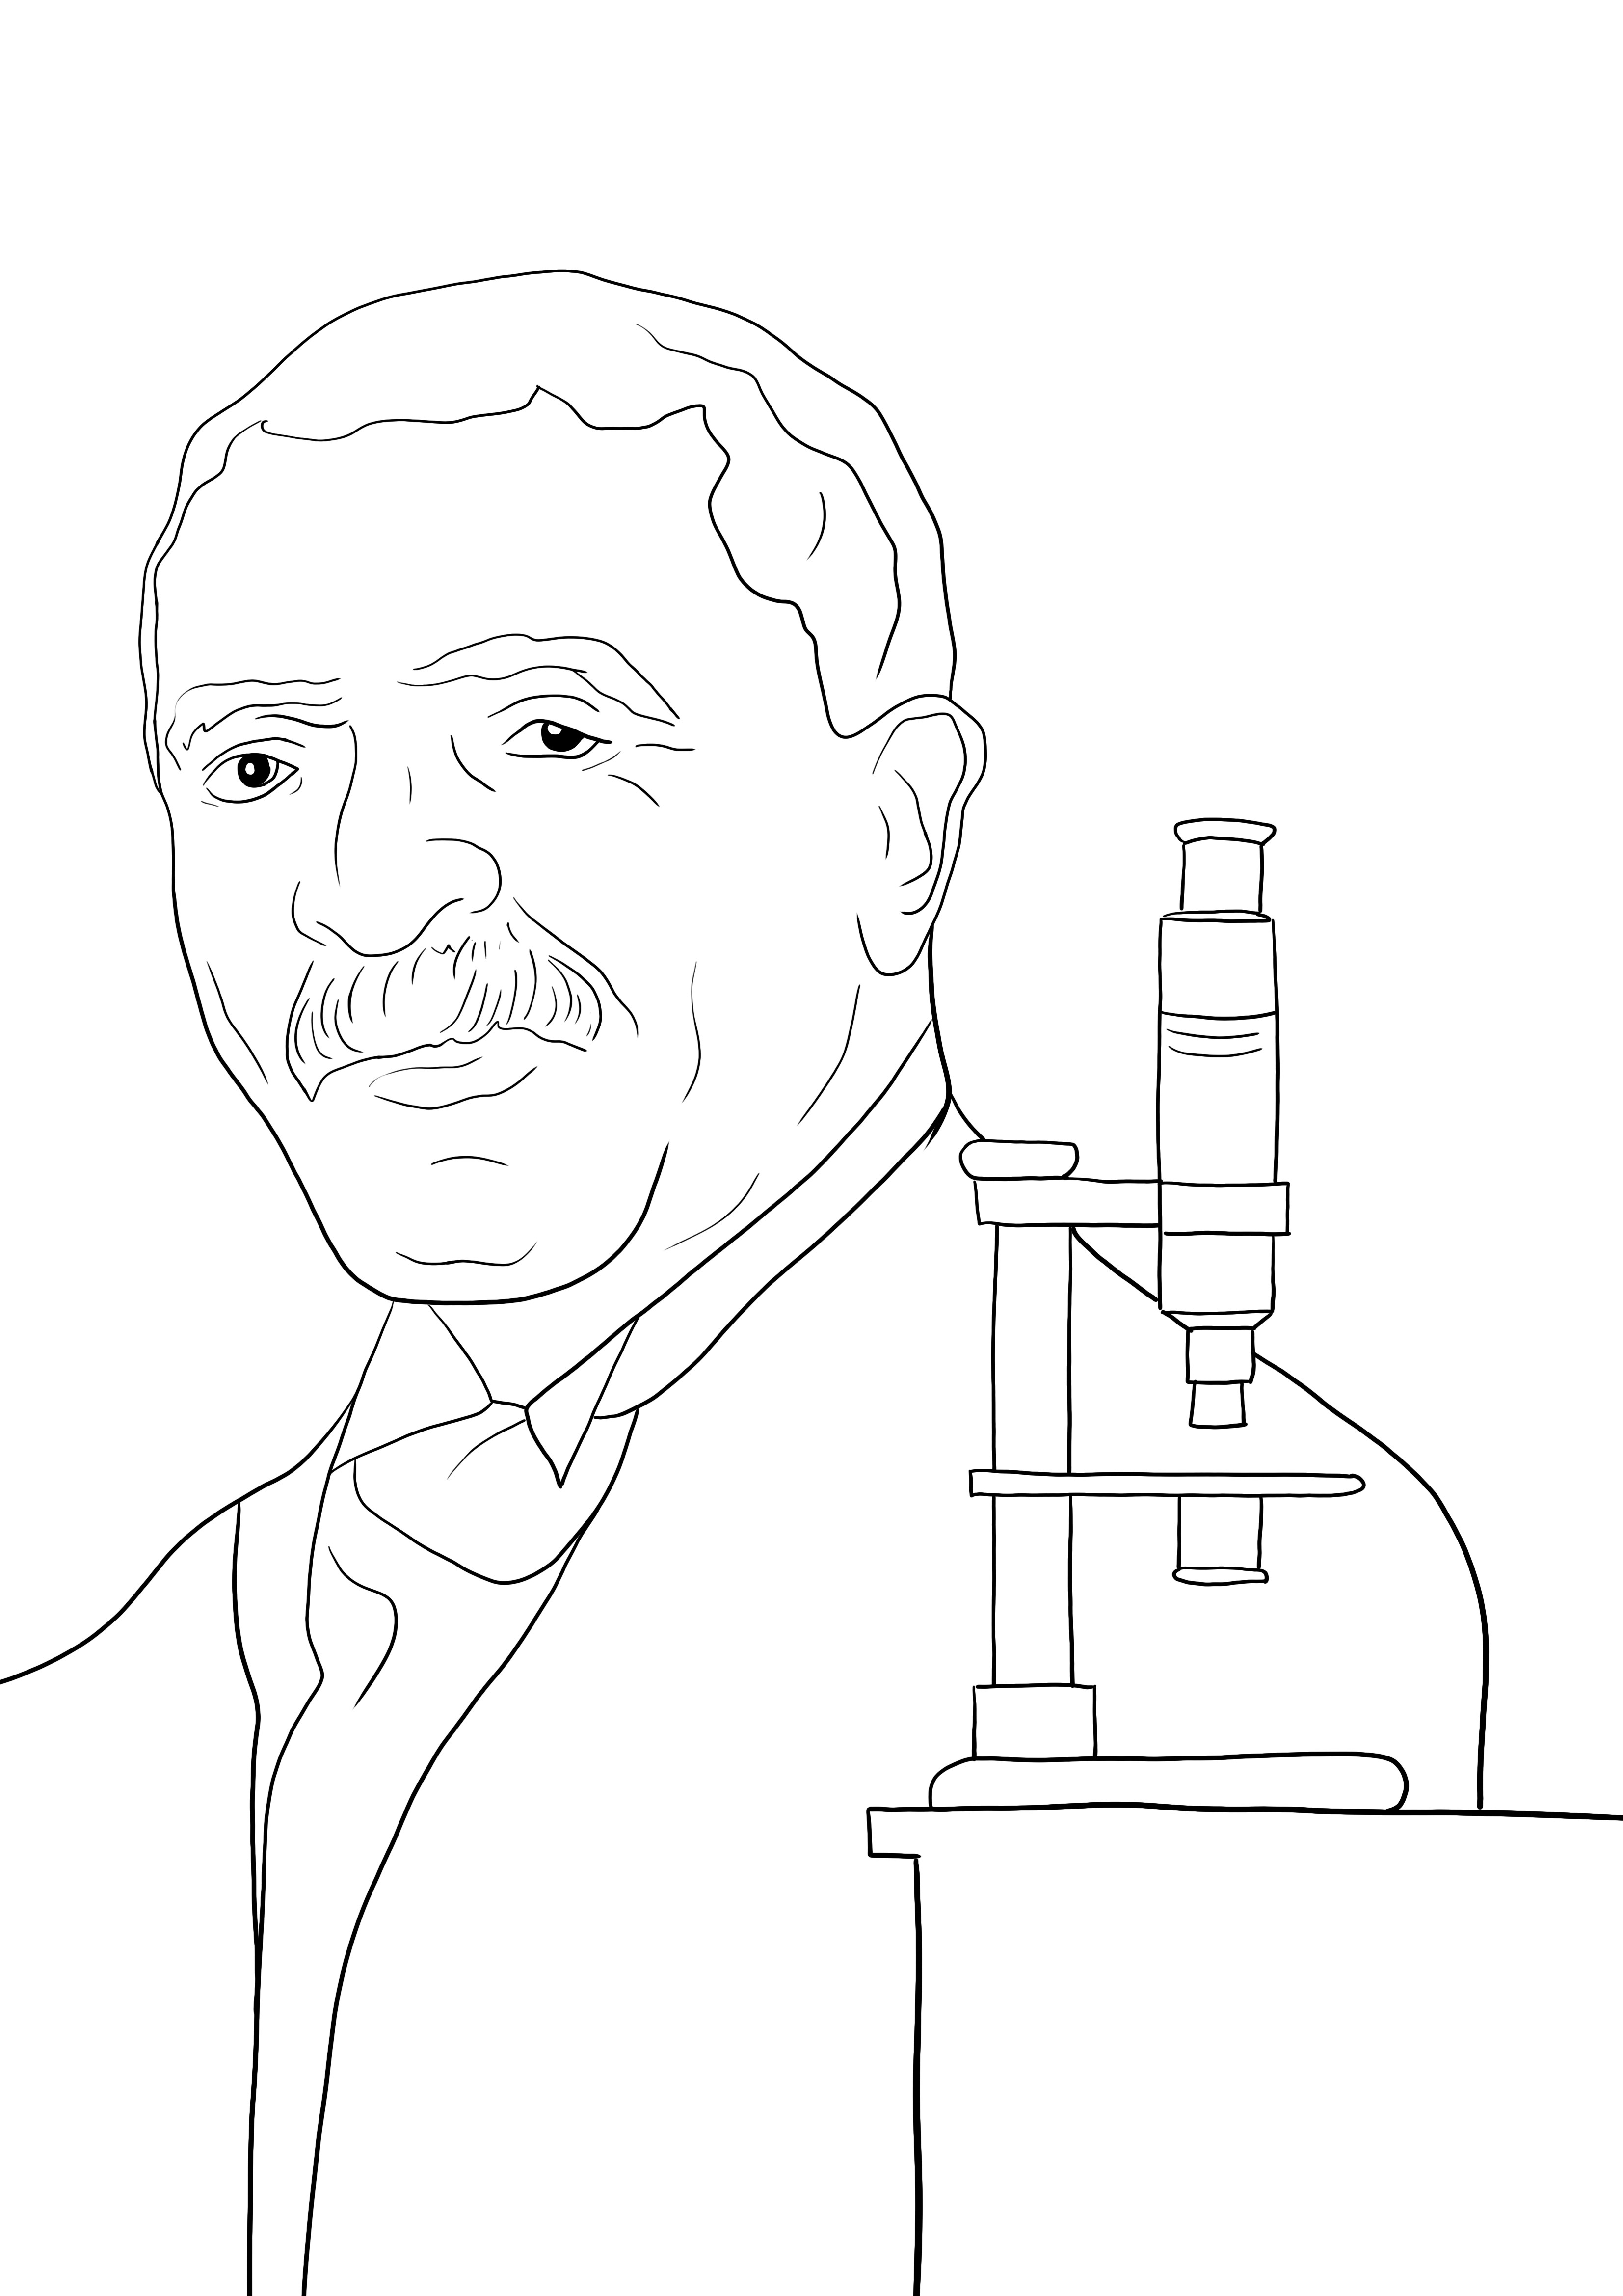 Dibujo de George Washington Carver para colorear para uso libre